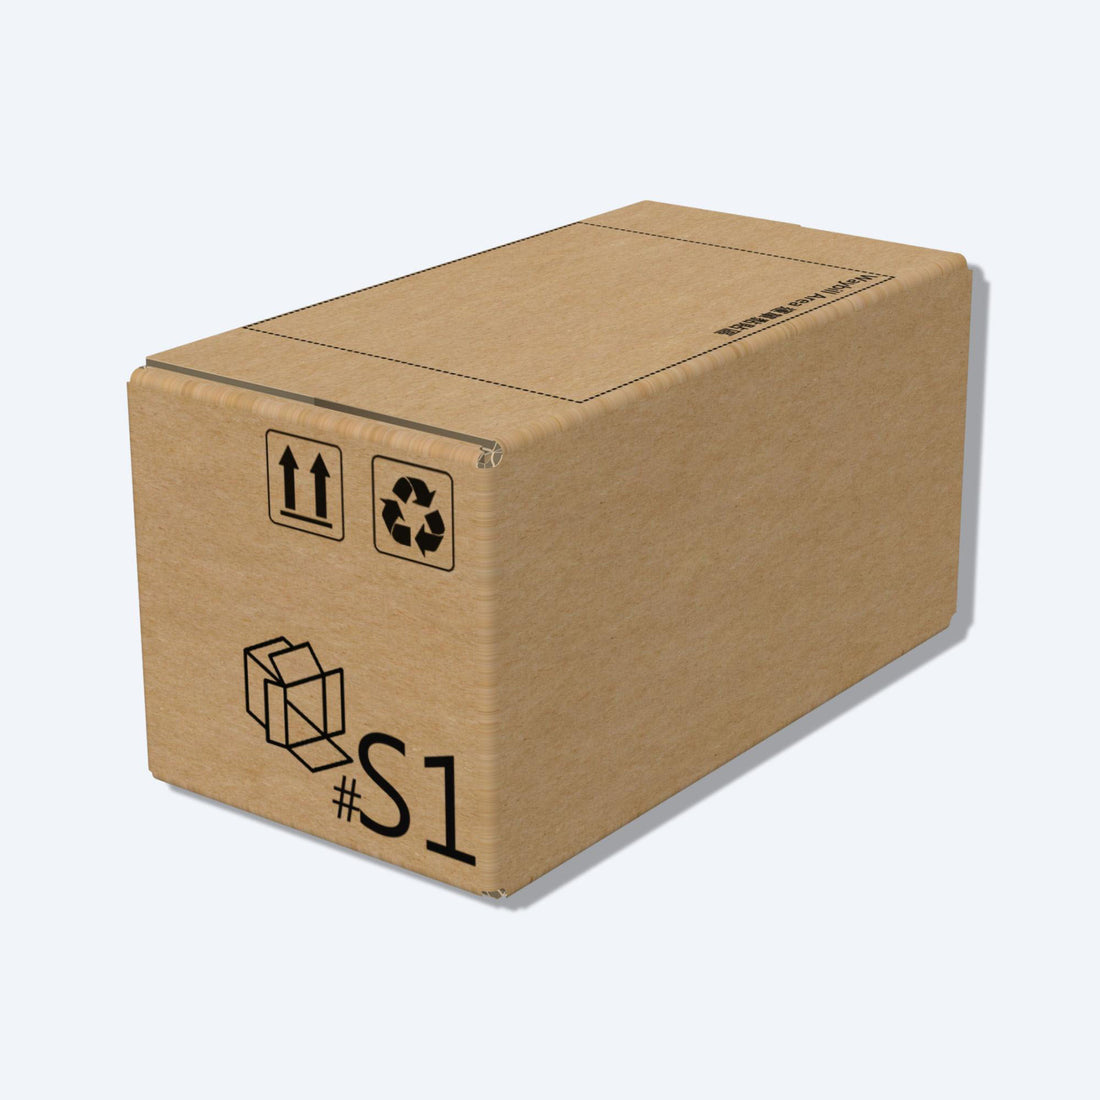 堅固的啡色順豐速運S1尺寸紙箱正面圖，這款快遞紙箱專為順豐速運設計。